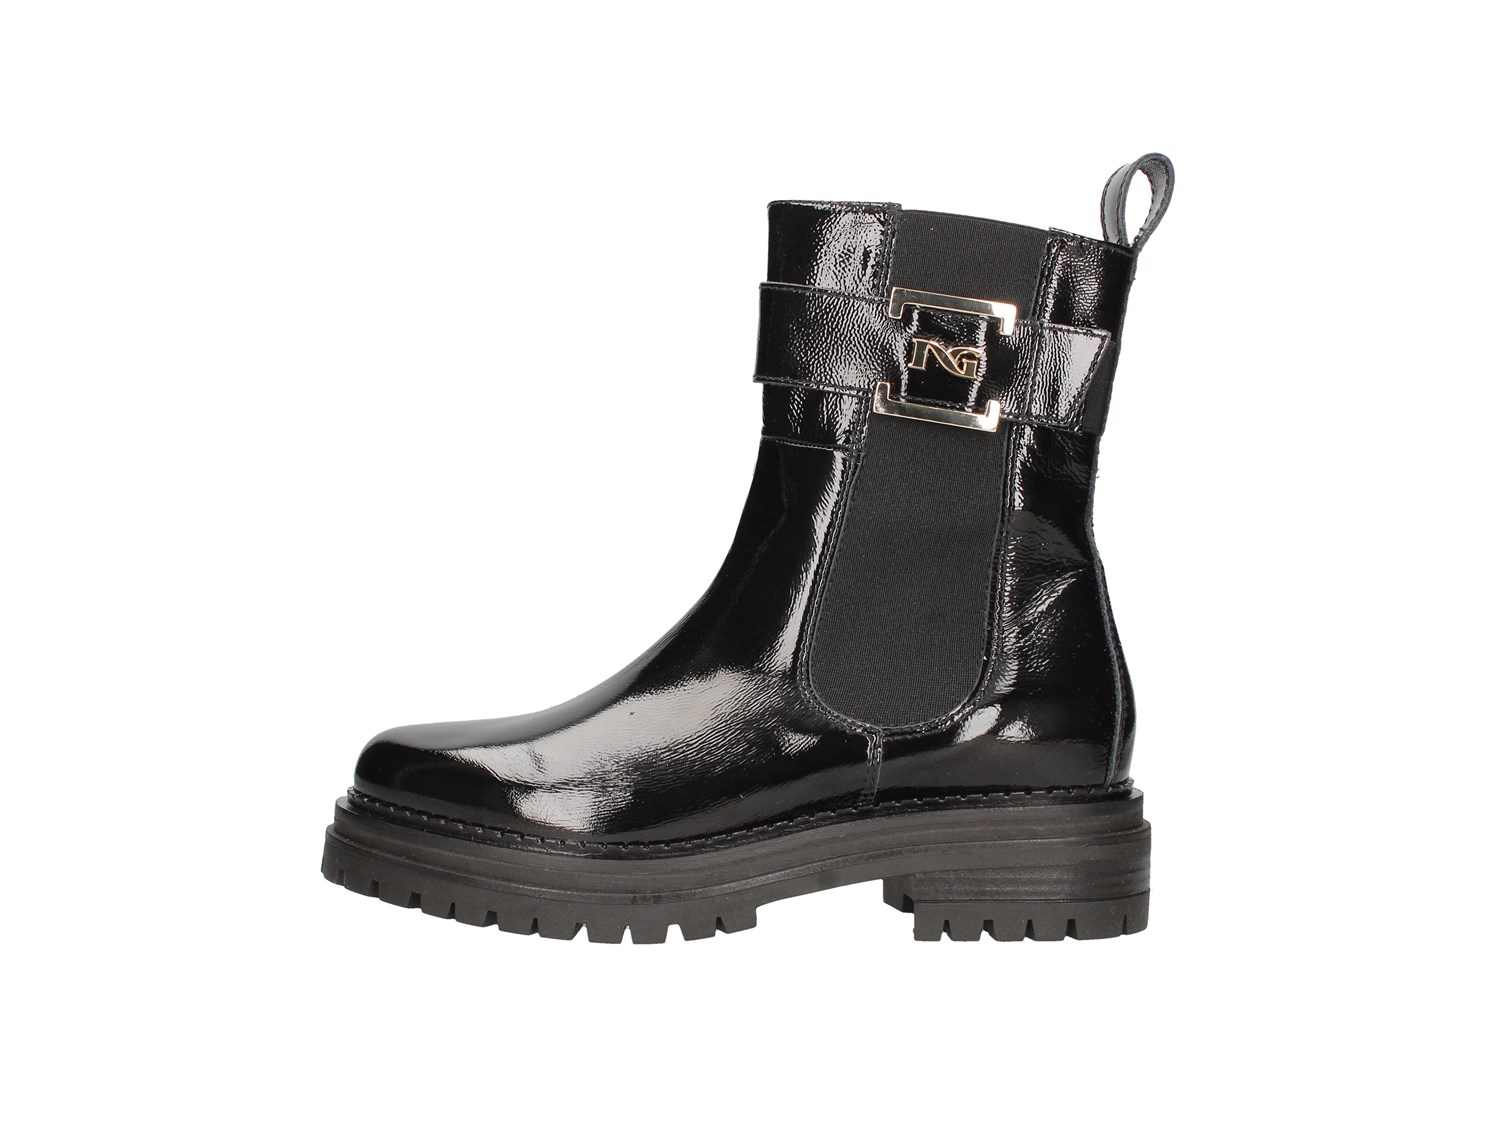 Nero Giardini I117714d Black Shoes Women Amphibian